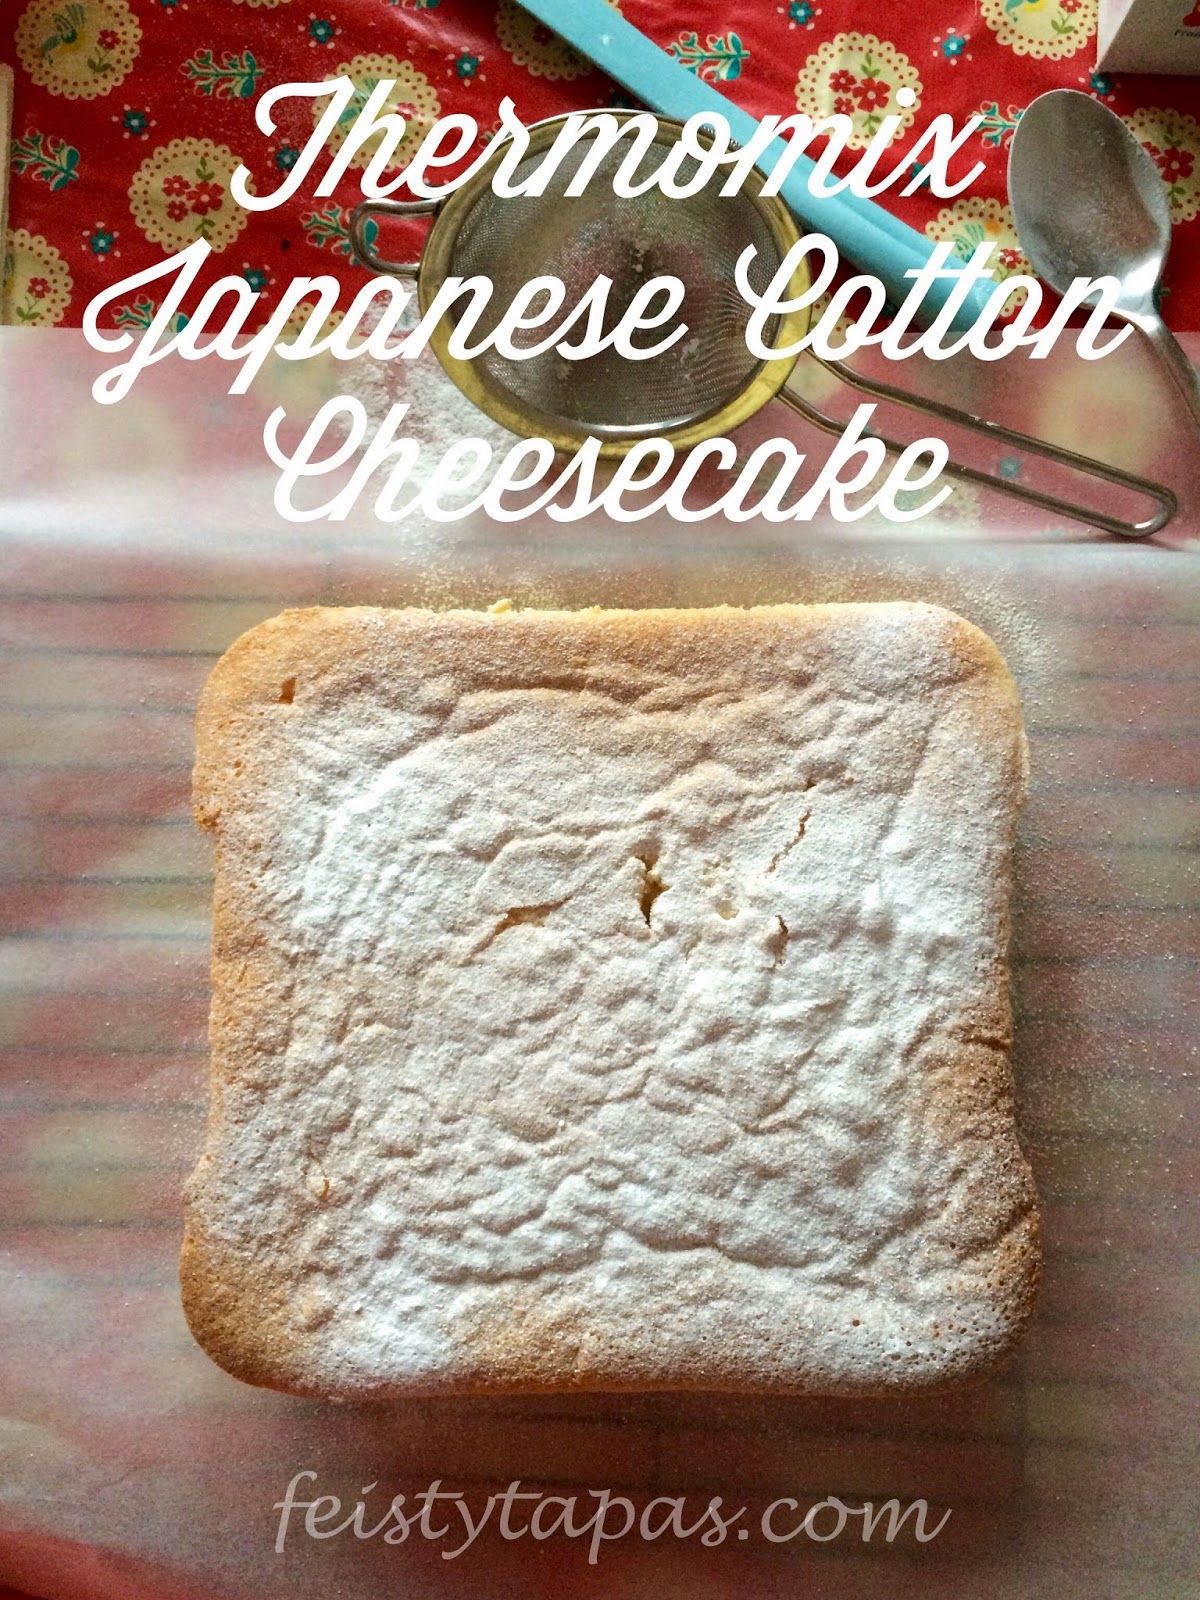 FEISTY TAPAS: Thermomix Japanese Cotton Cheesecake